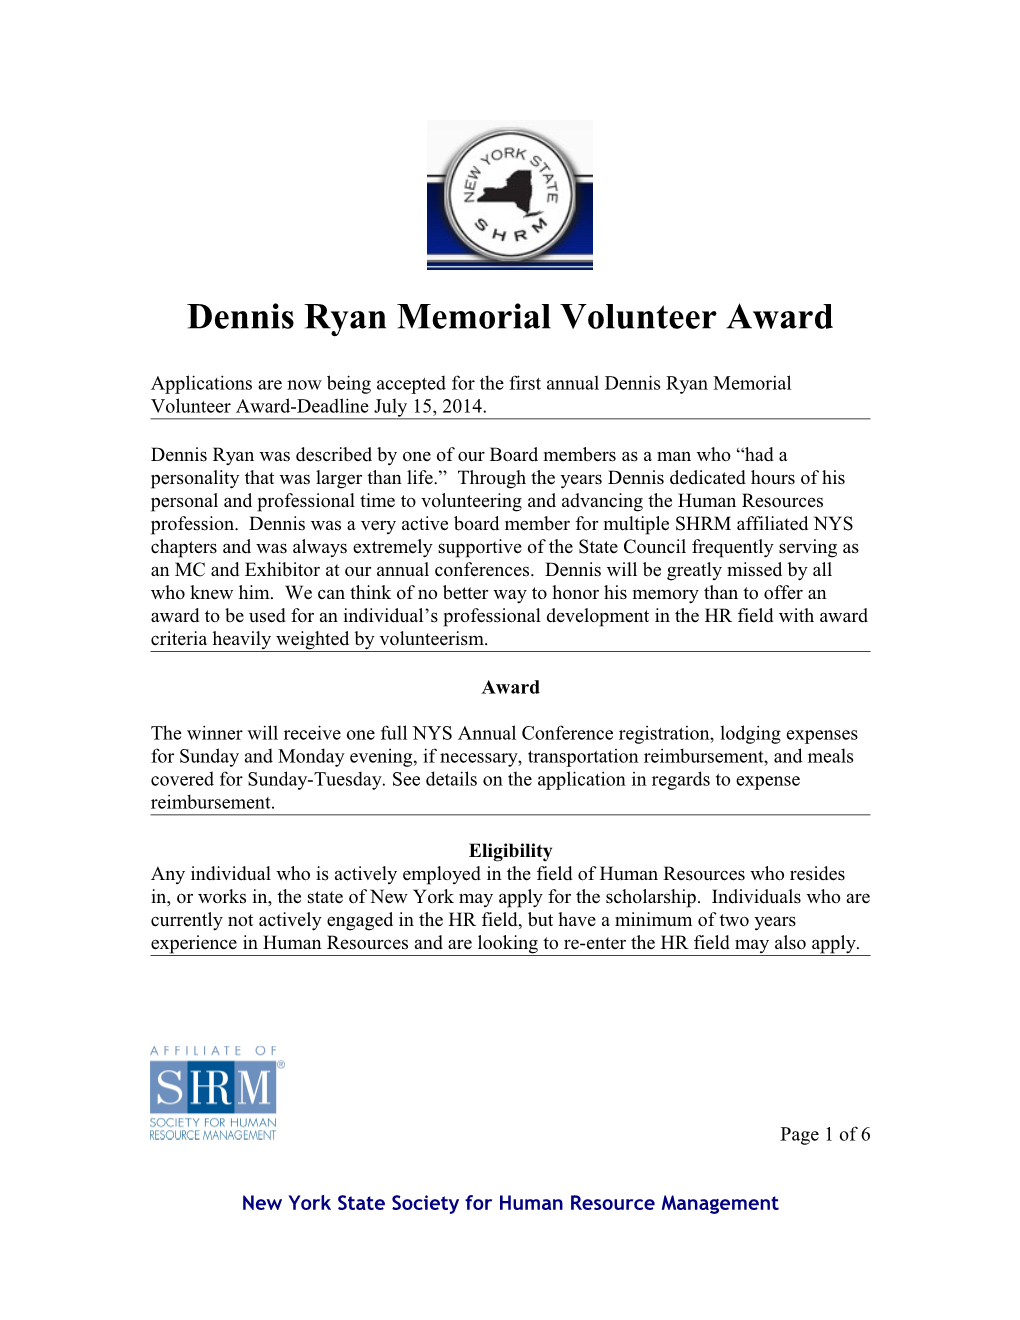 Dennis Ryan Memorial Volunteer Award s1